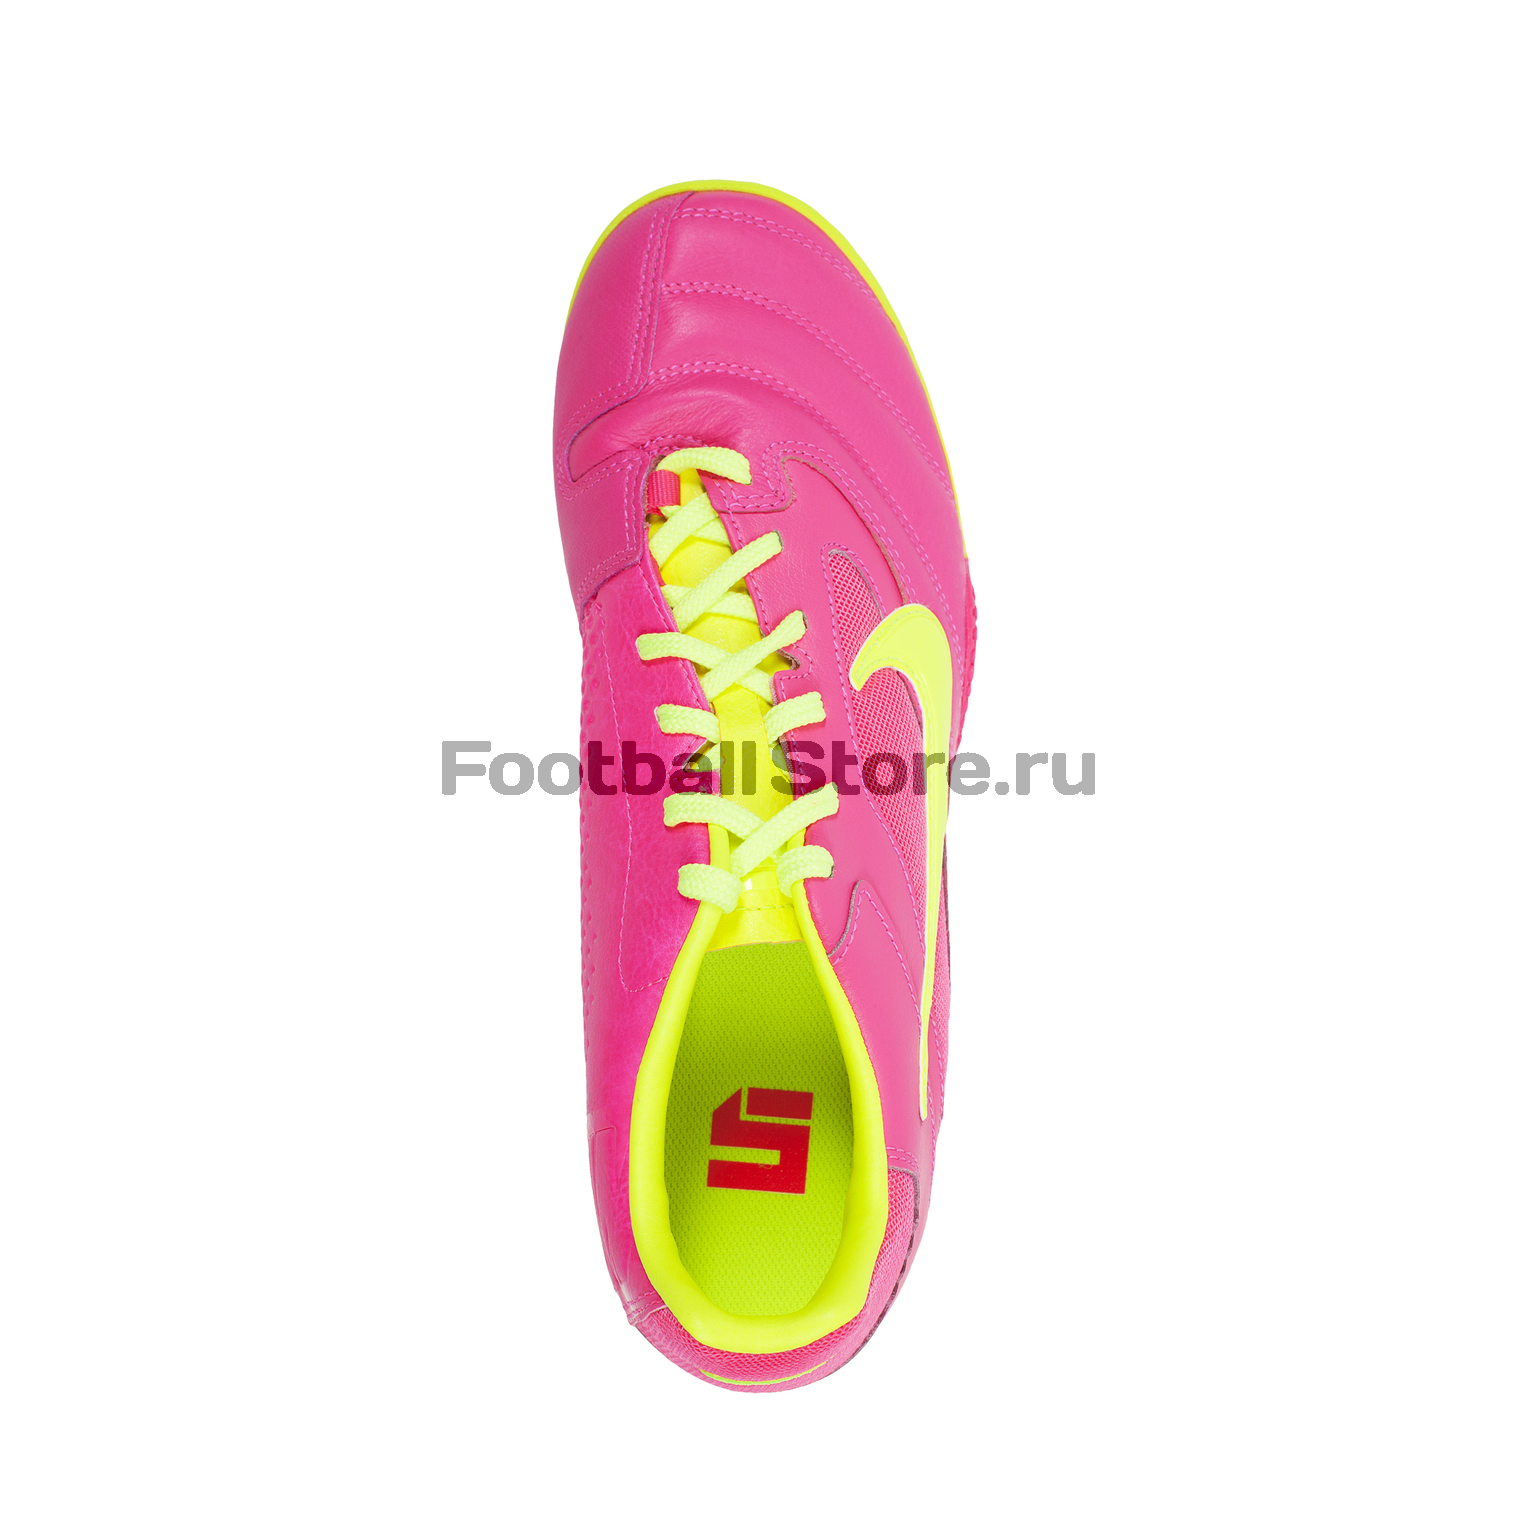 Обувь для зала Nike 5 Elastico Pro 415121-676